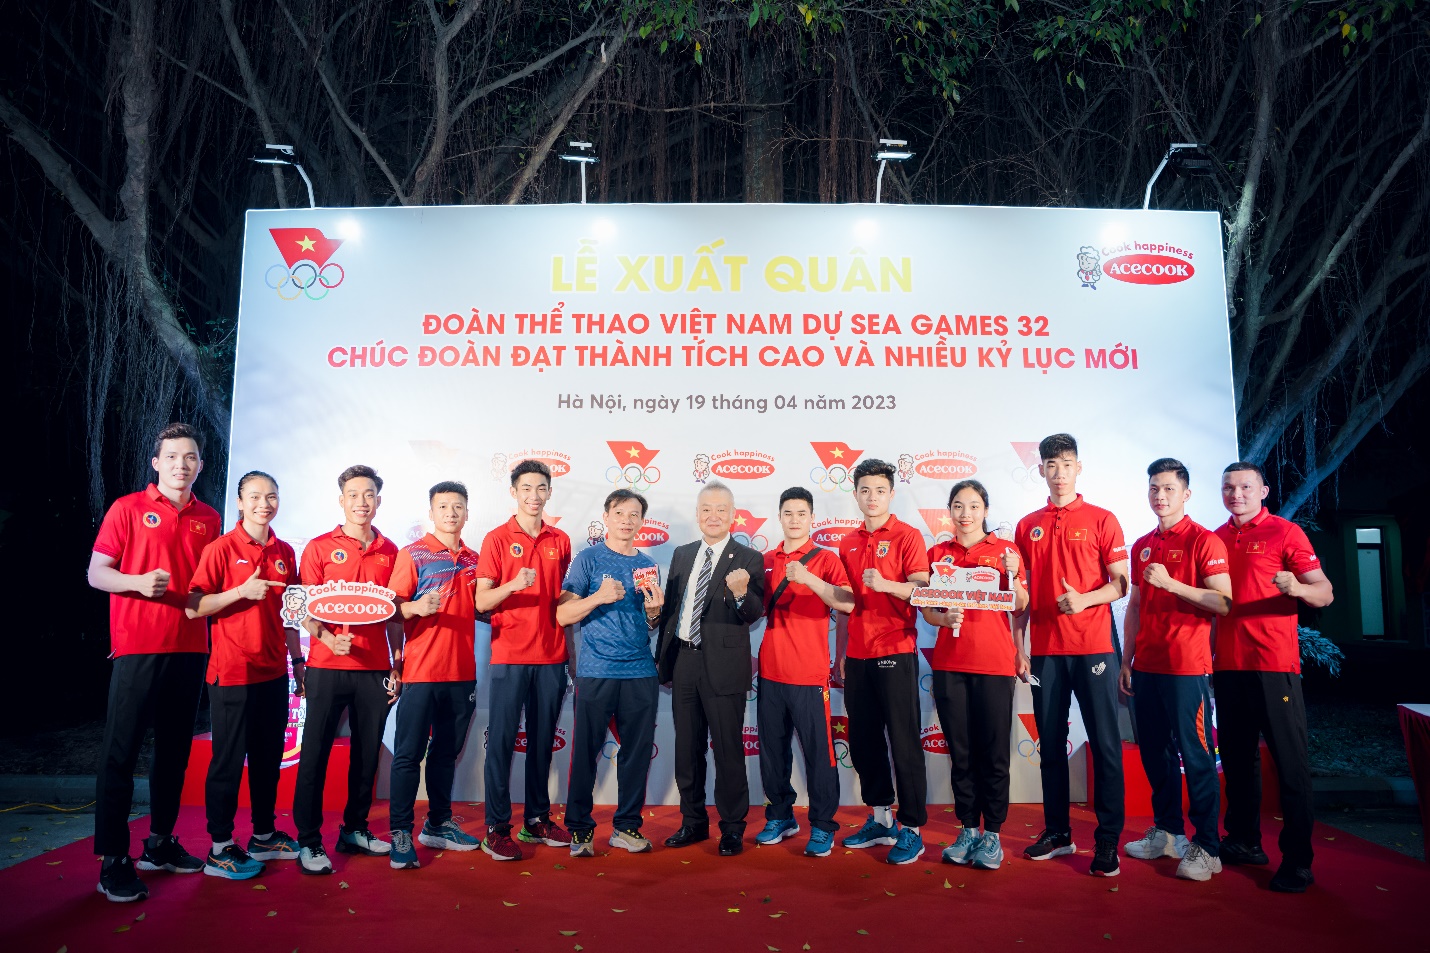 ACECOOK Việt Nam đồng hành cùng Đoàn thể thao Việt Nam dự SEA GAMES 32 - Ảnh 4.